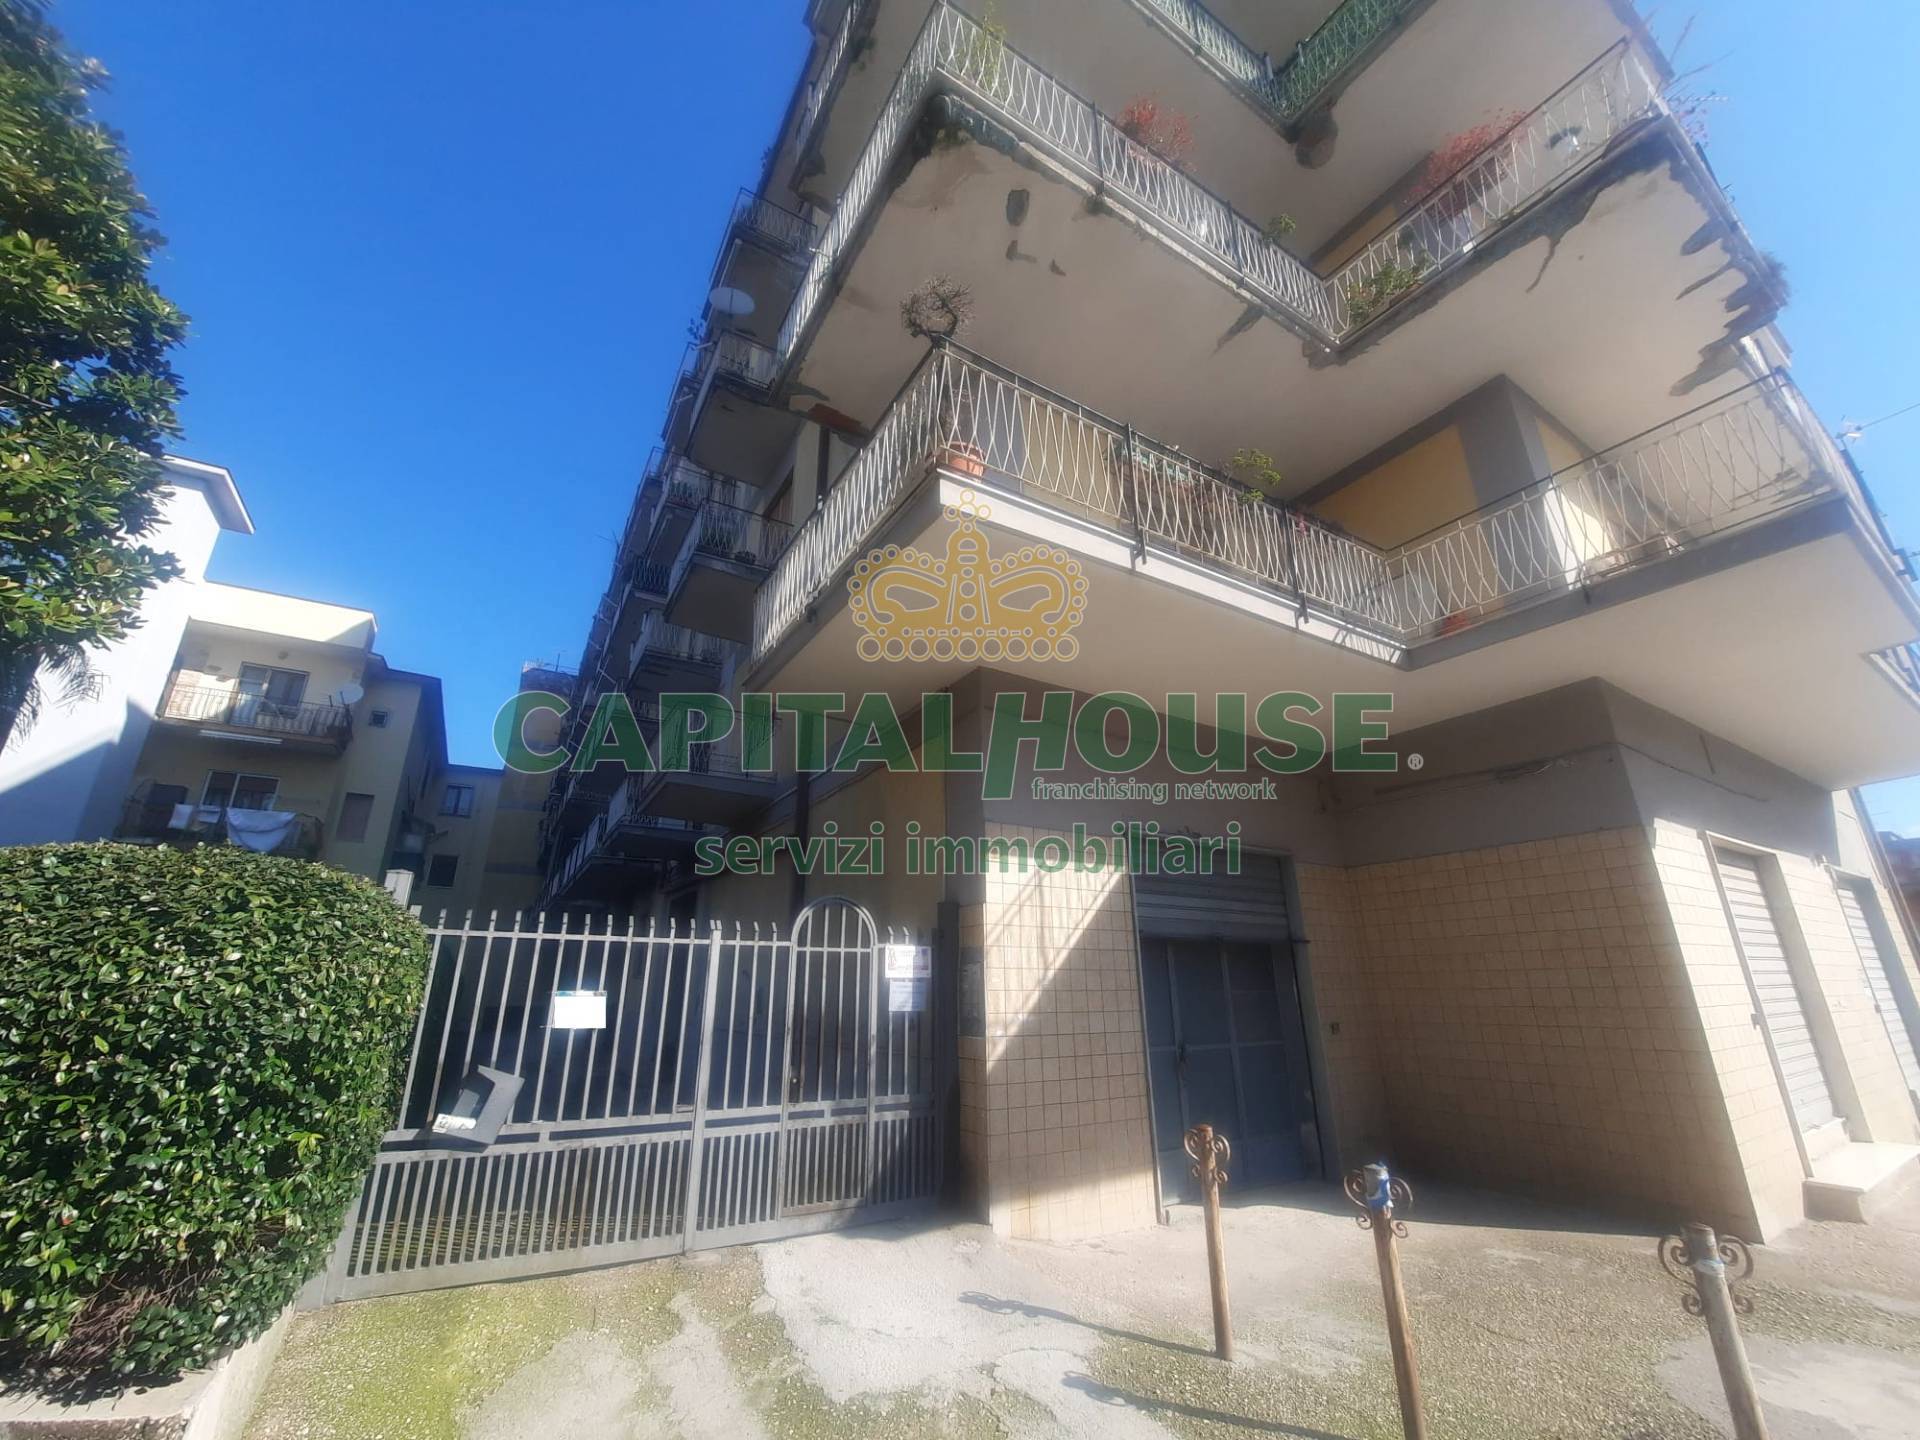 Appartamento in vendita a Marigliano, 4 locali, prezzo € 115.000 | PortaleAgenzieImmobiliari.it